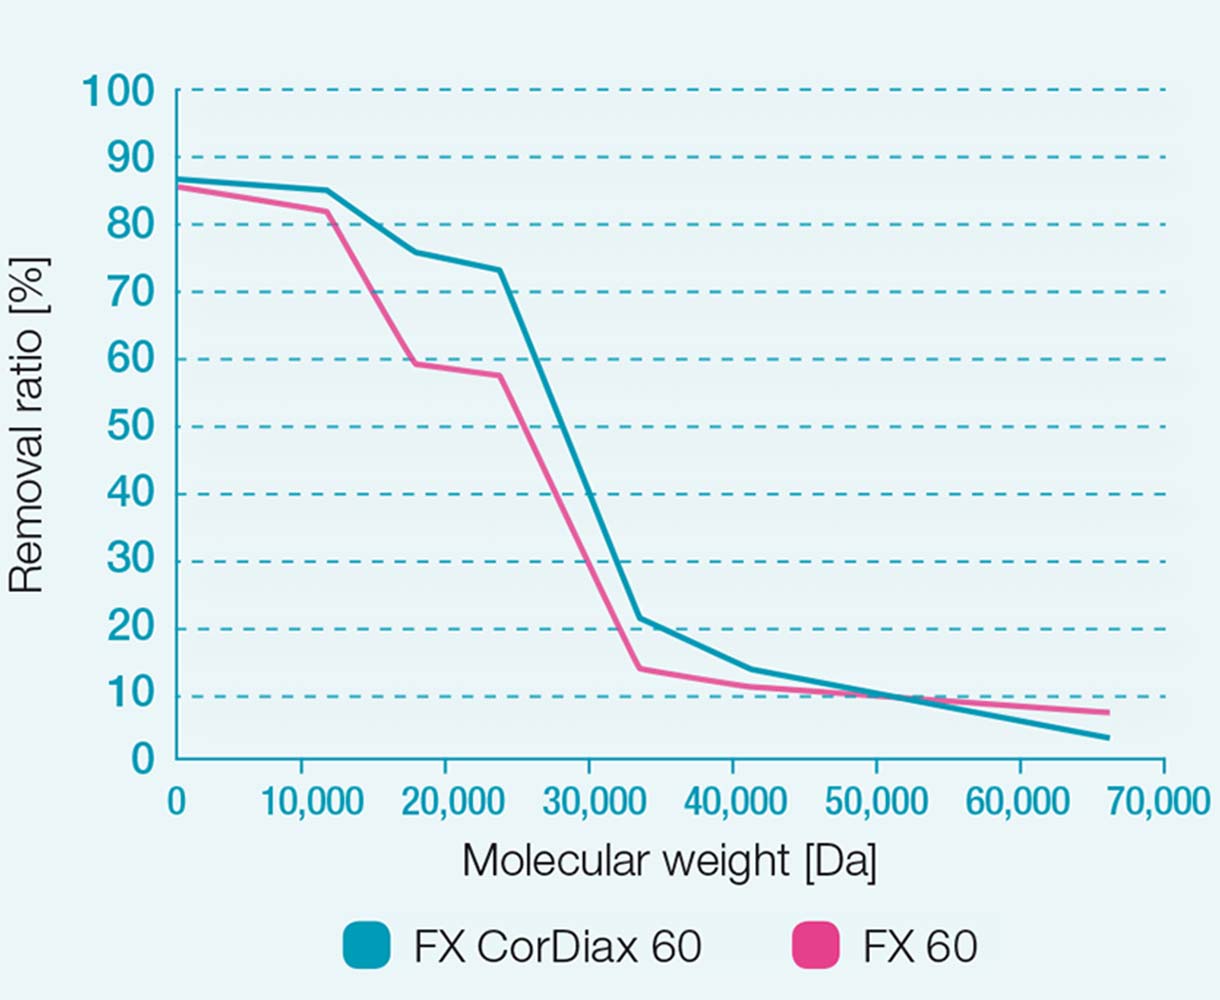 Taxas de remoção dos dialisadores FX 60 e FX CorDiax 60